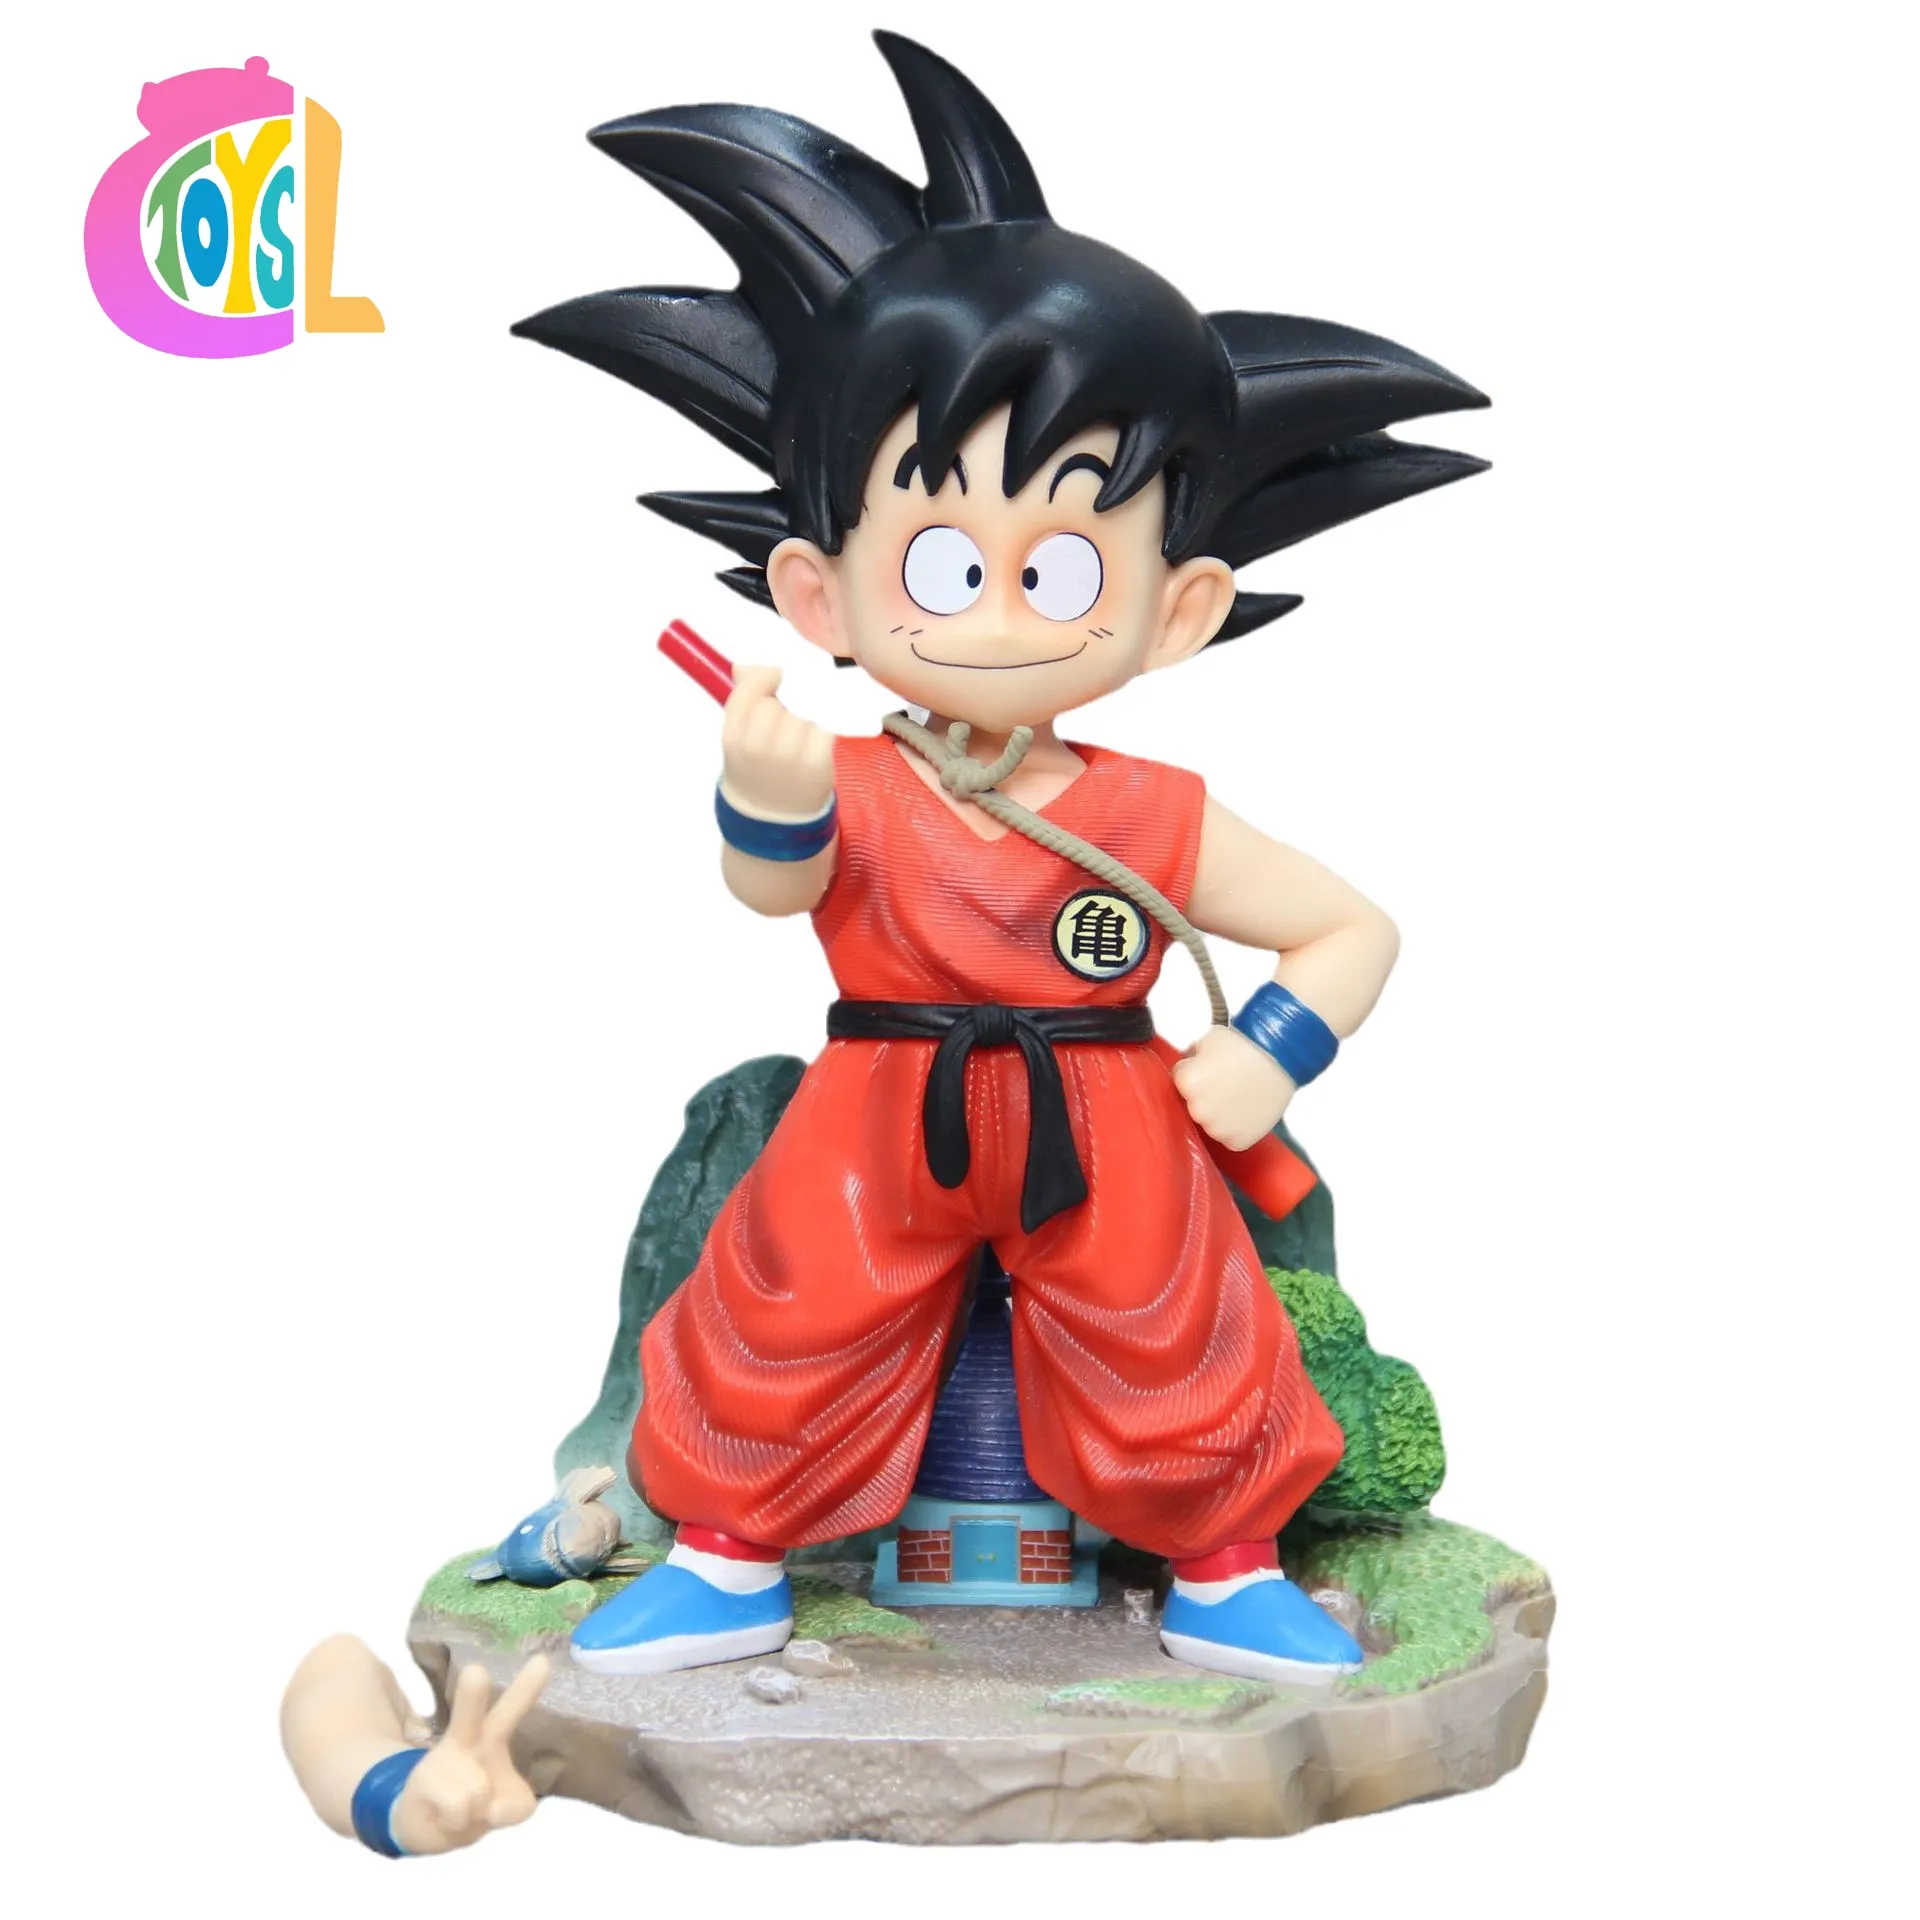 Buena calidad Dragons Ball gran oferta japonés GK infancia Goku personaje modelo juguetes Anime figura de acción